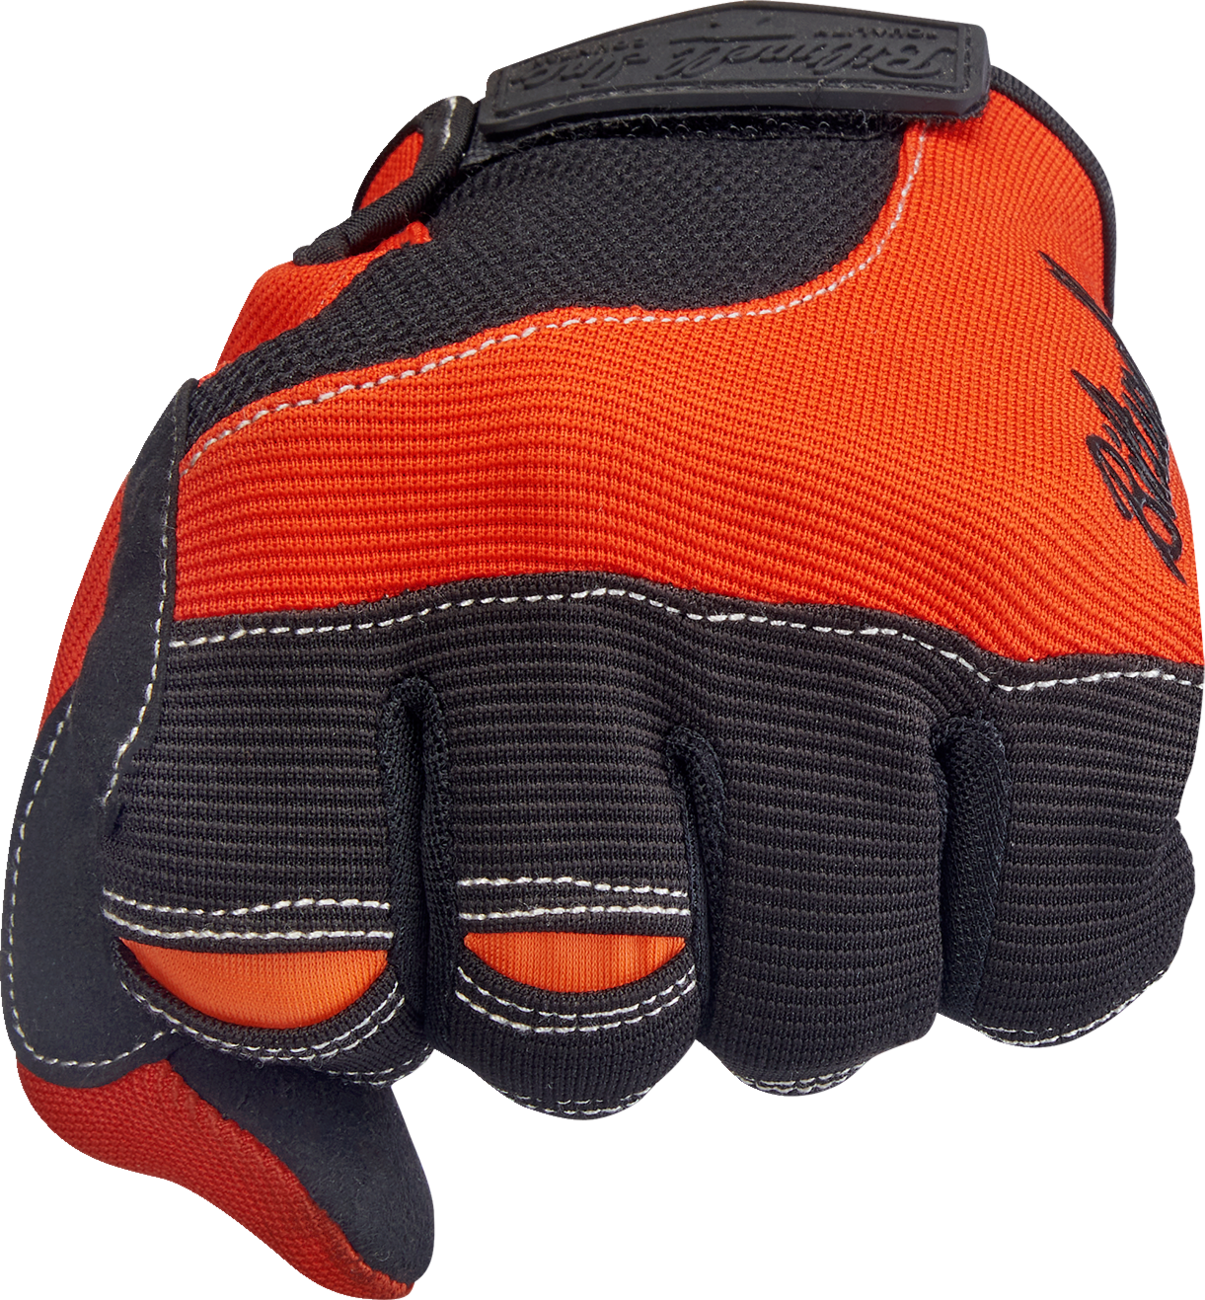 BILTWELL Moto Gloves - Orange/Black - XL 1501-0106-005